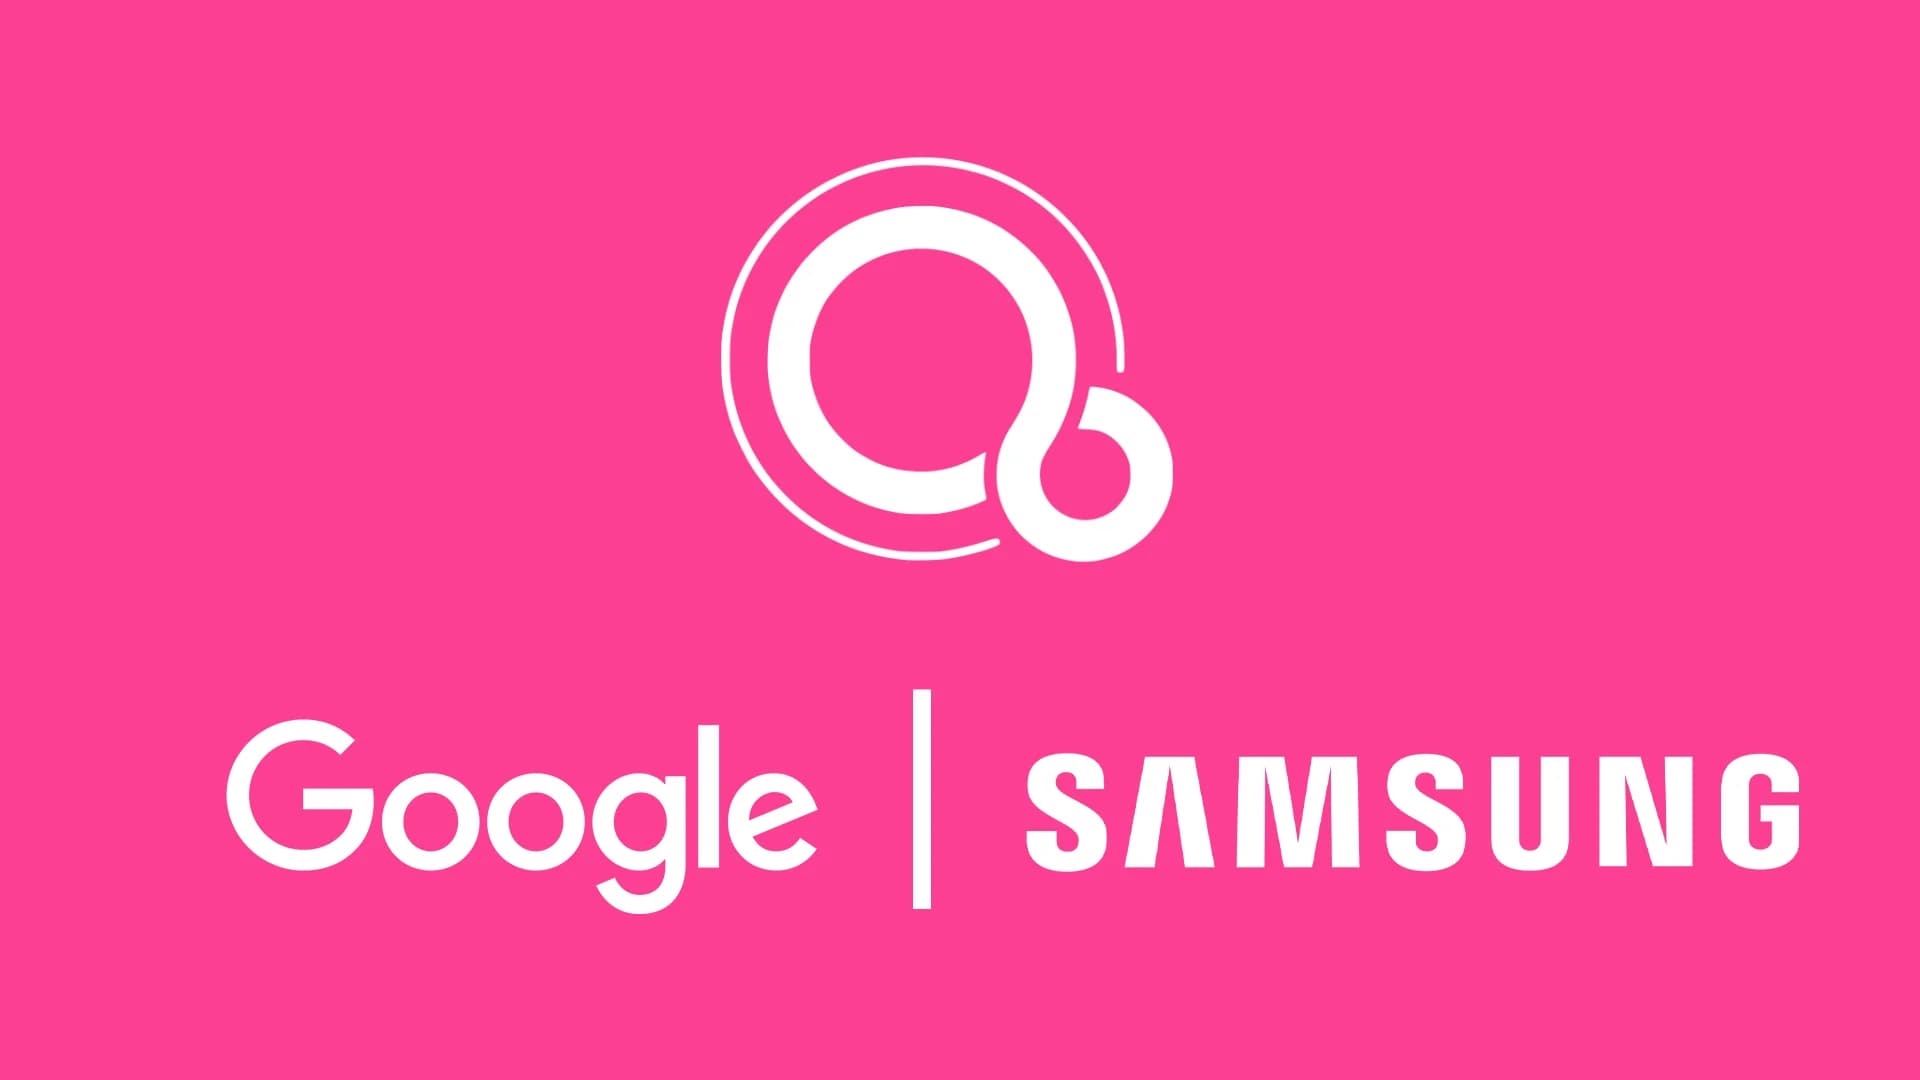 Żegnaj Android, witaj Fuschia - romans Samsunga z Google trwa dalej